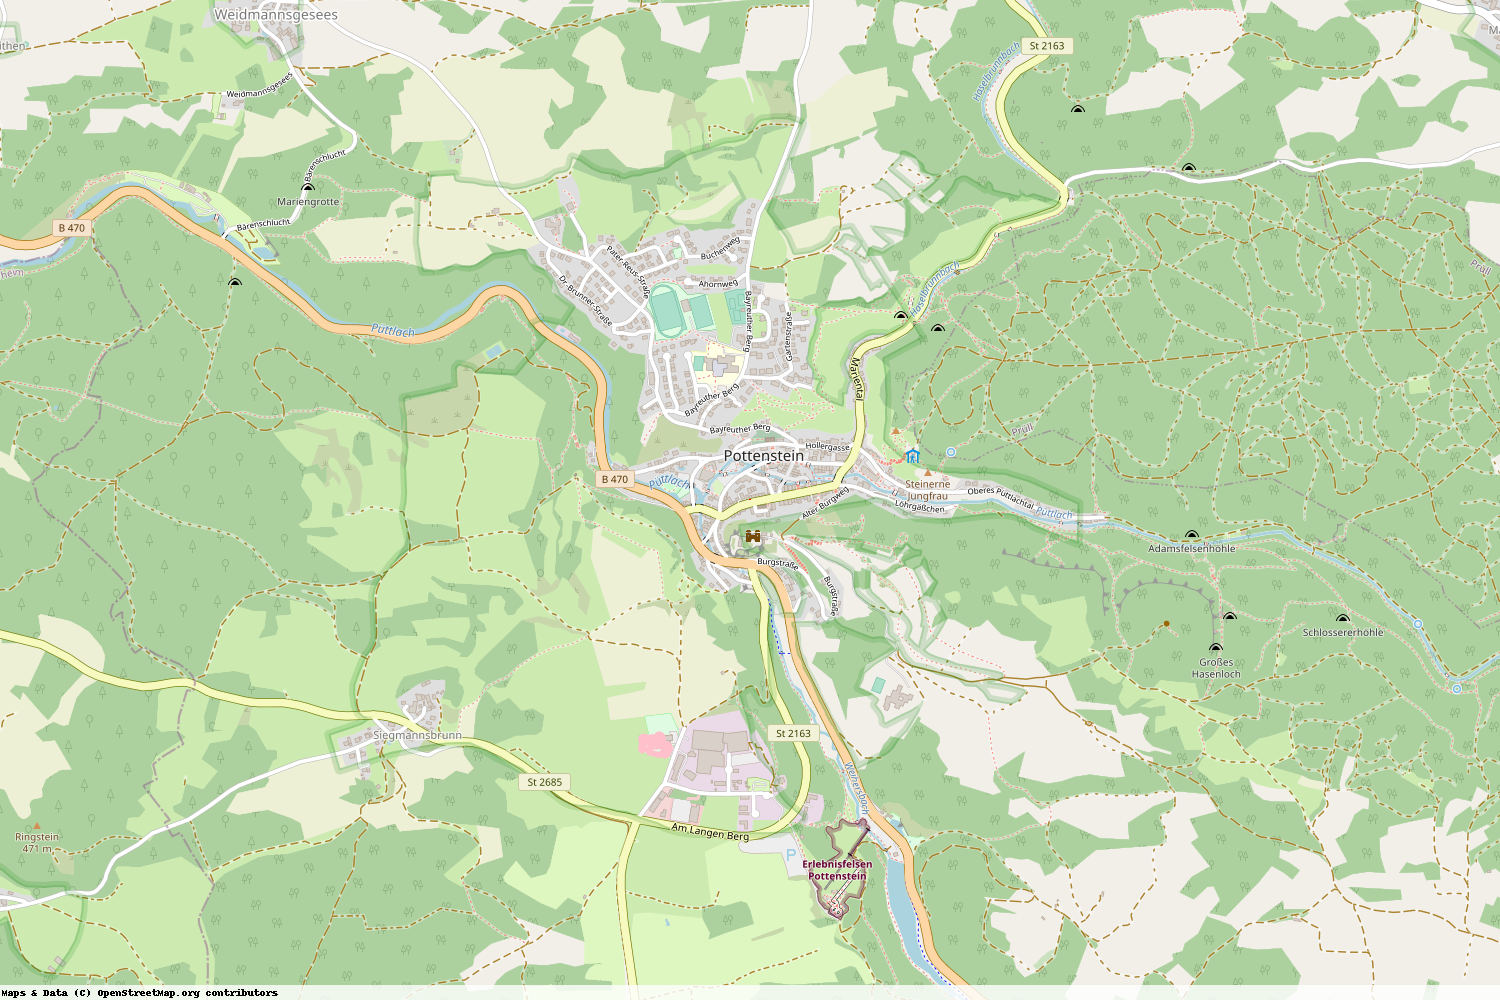 Ist gerade Stromausfall in Bayern - Bayreuth - Pottenstein?